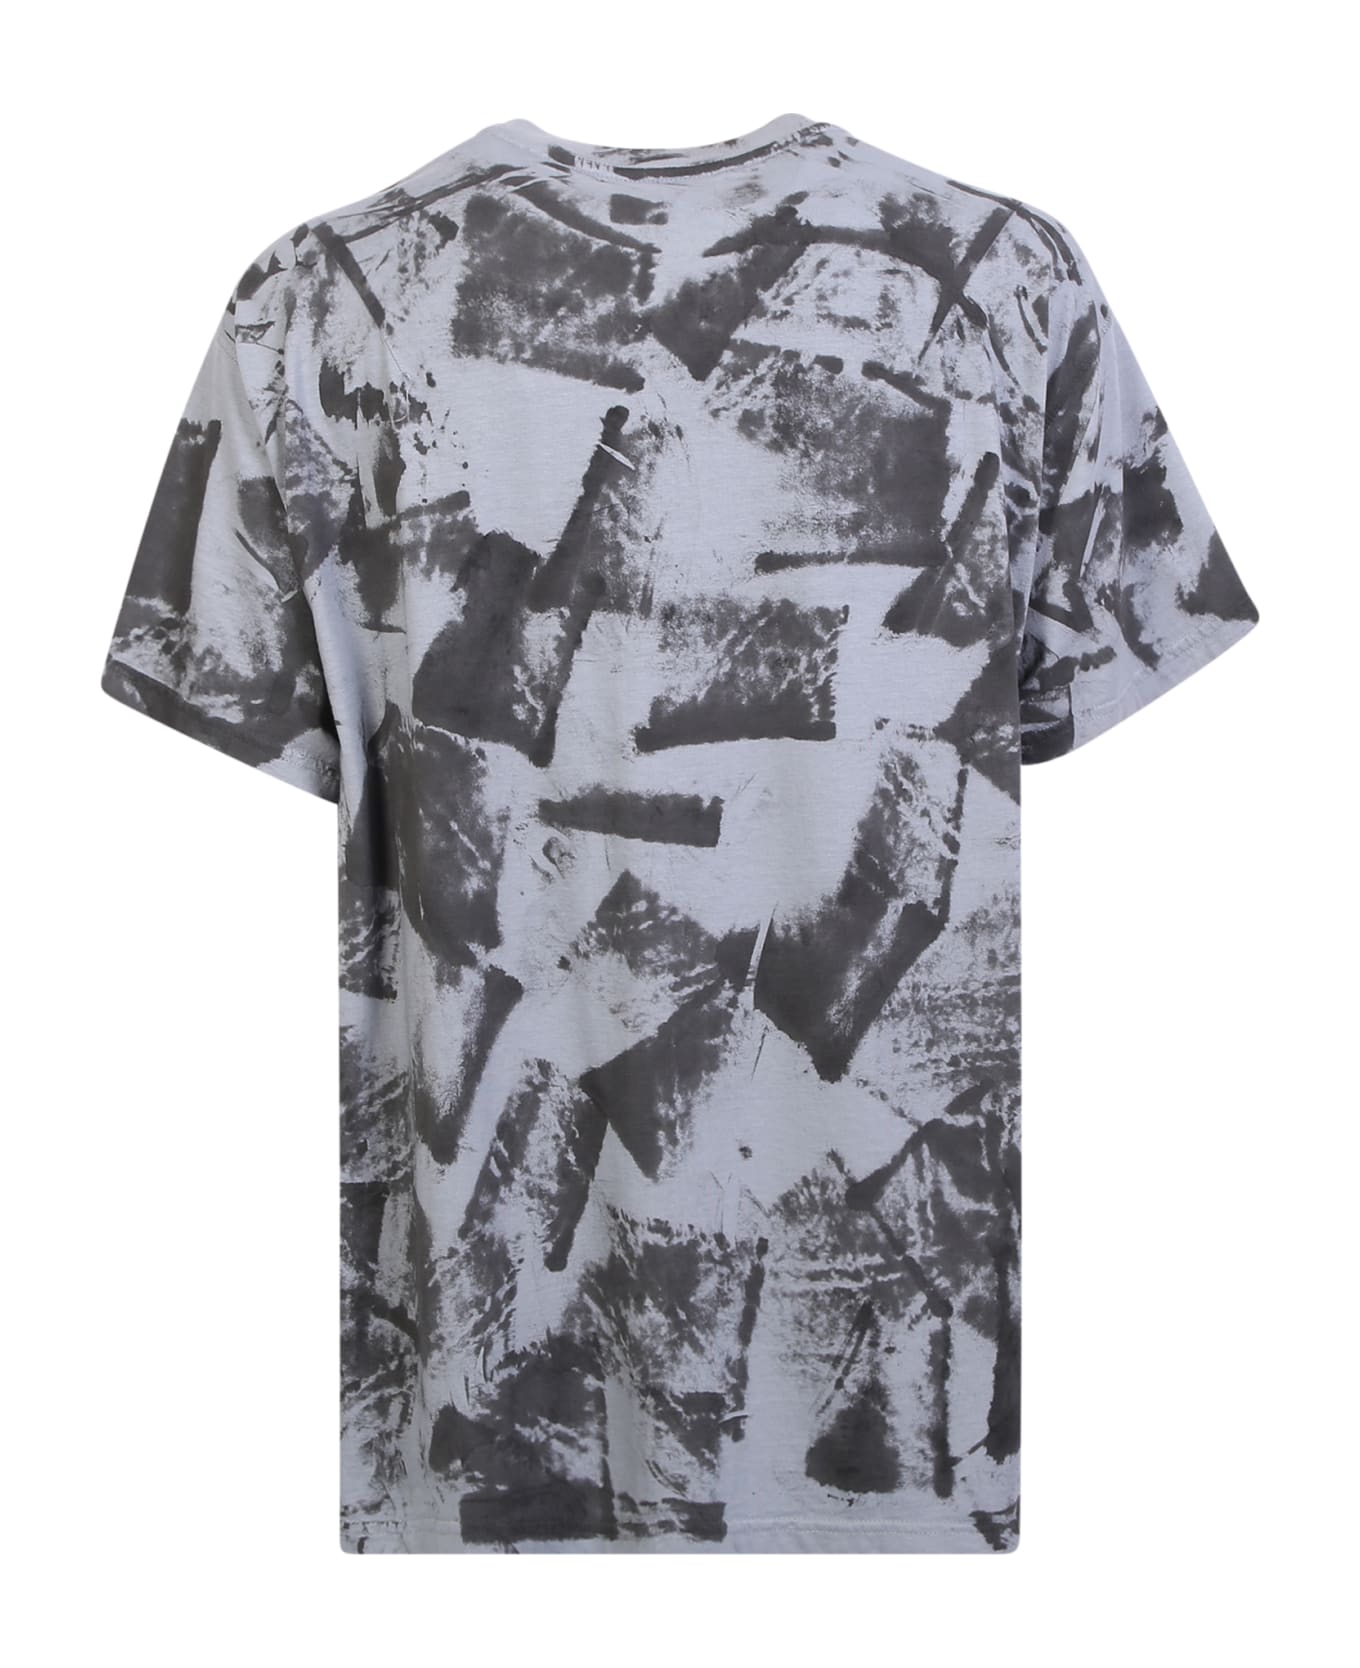 Mauna Kea Grey Cotton T-shirt - Grey